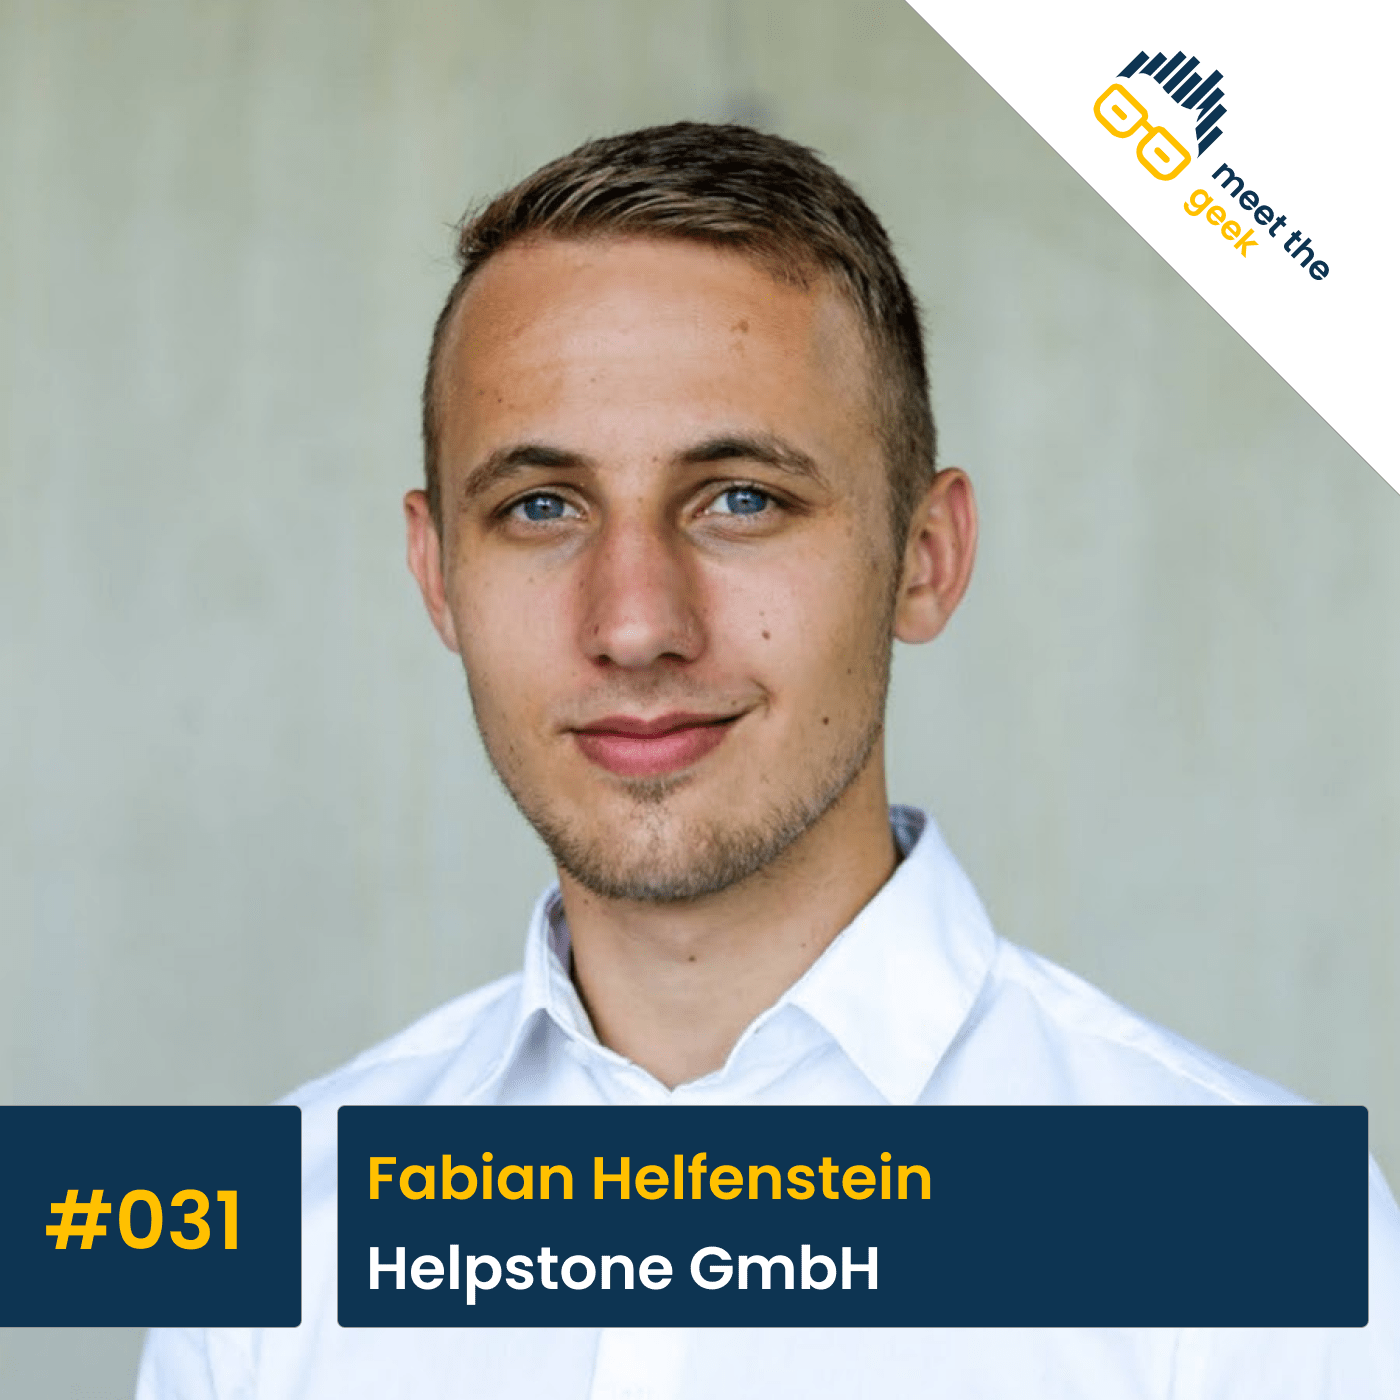 #031 Fabian Helfenstein, Helpstone GmbH